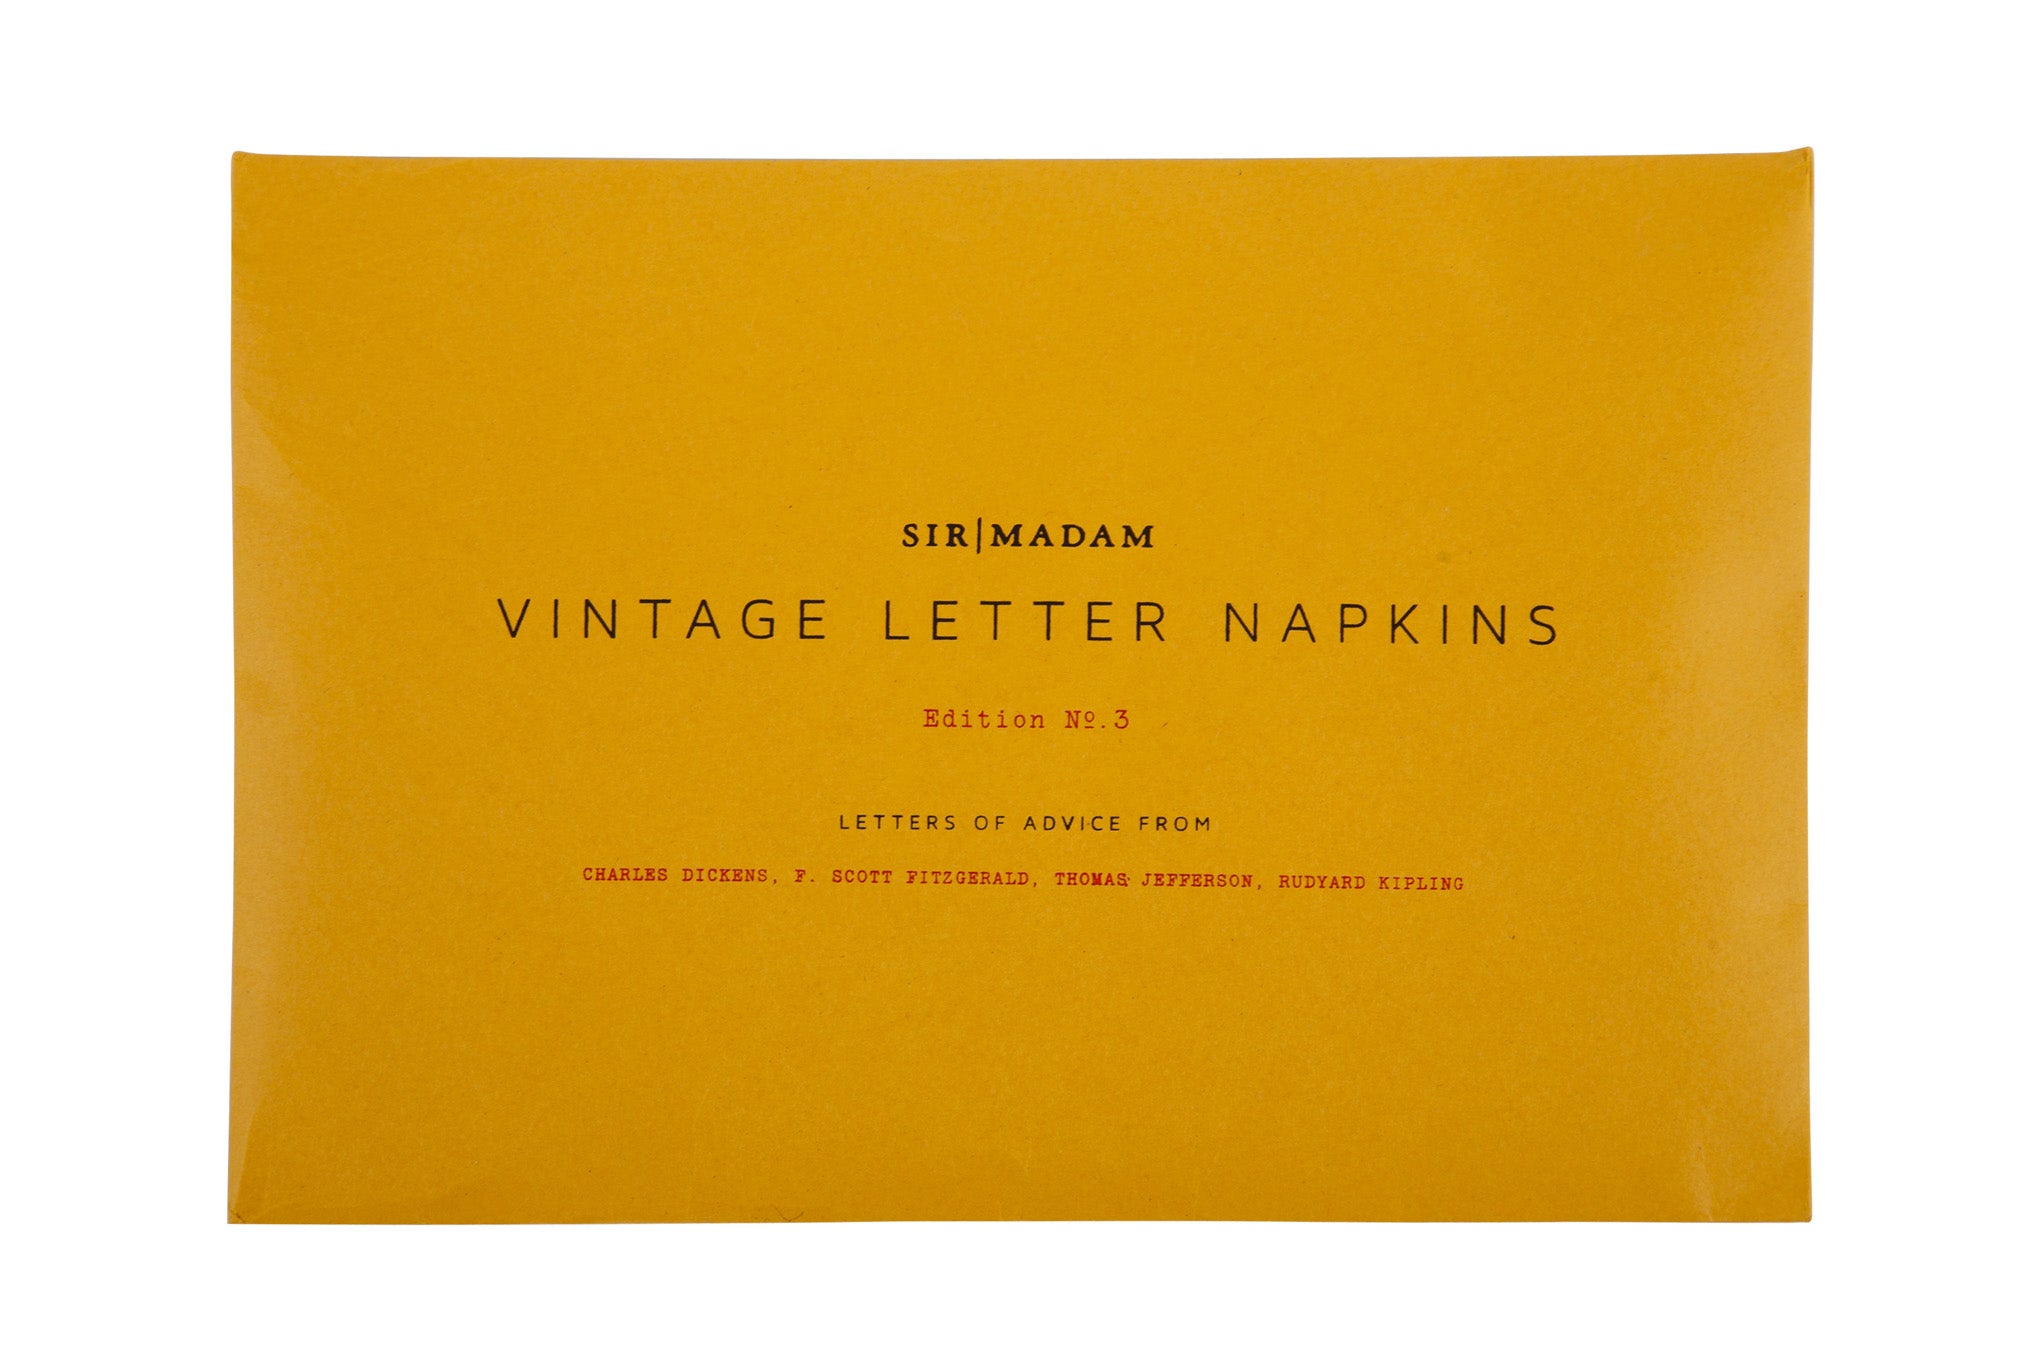 Vintage letter napkins envelope 